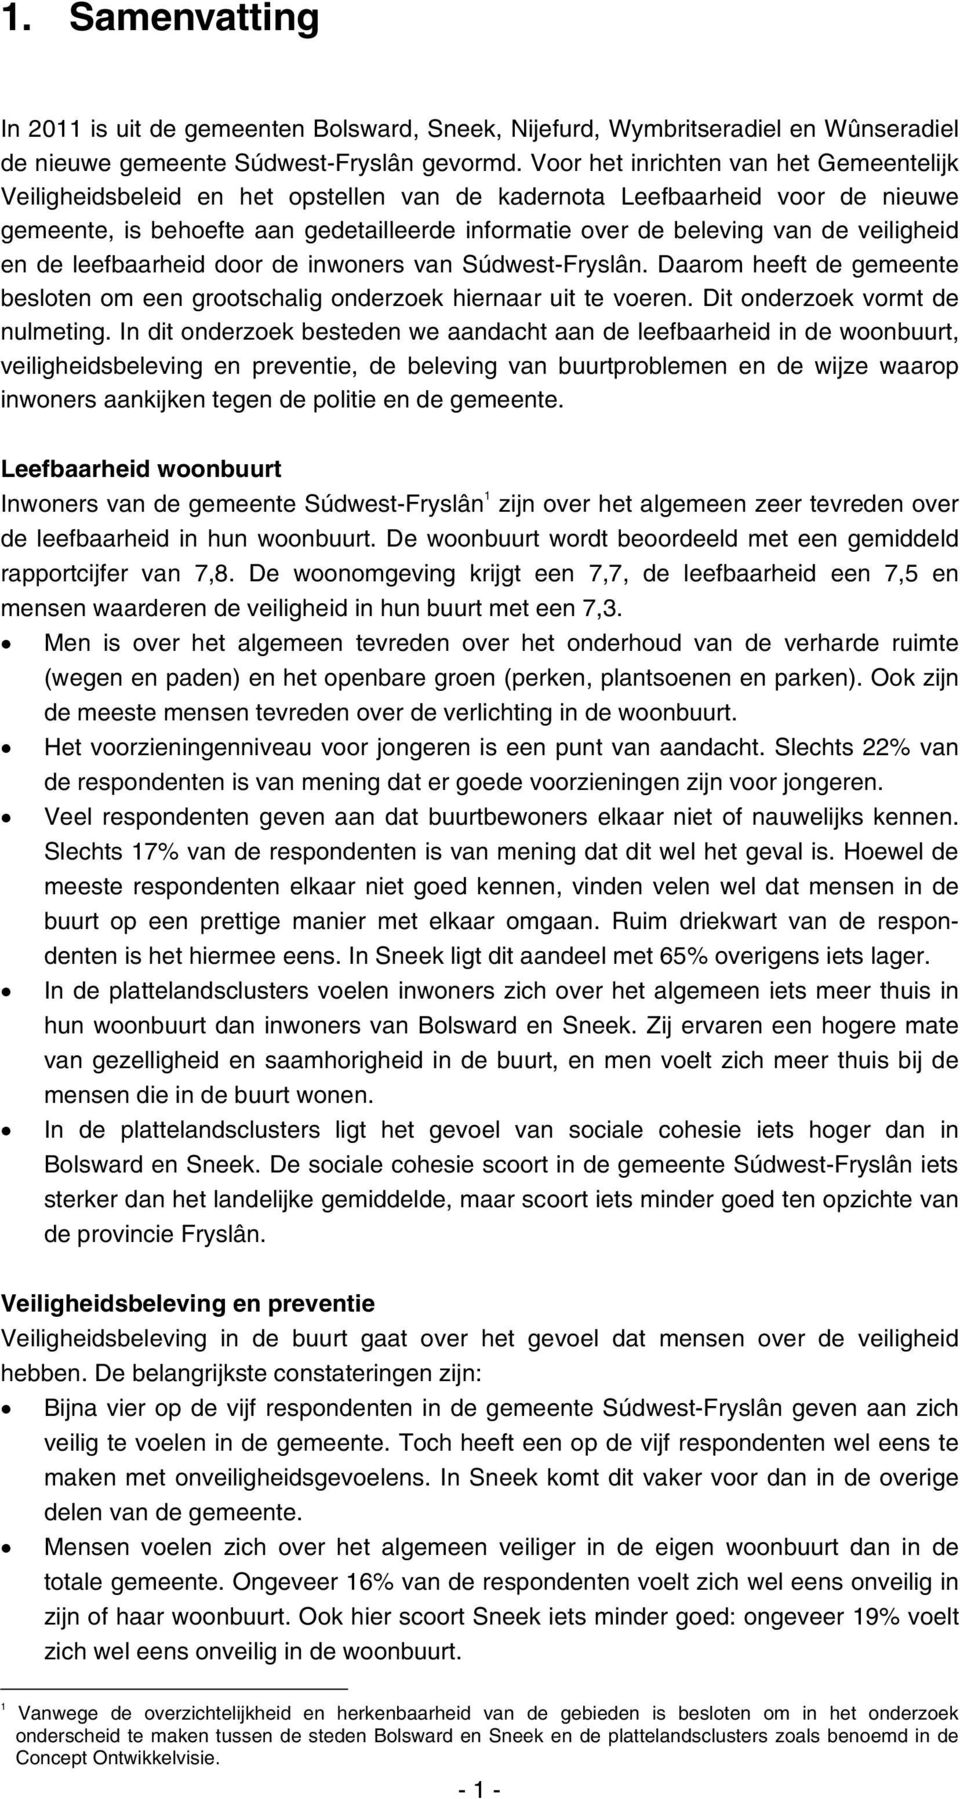 veiligheid en de leefbaarheid door de inwoners van Súdwest-Fryslân. Daarom heeft de gemeente besloten om een grootschalig onderzoek hiernaar uit te voeren. Dit onderzoek vormt de nulmeting.